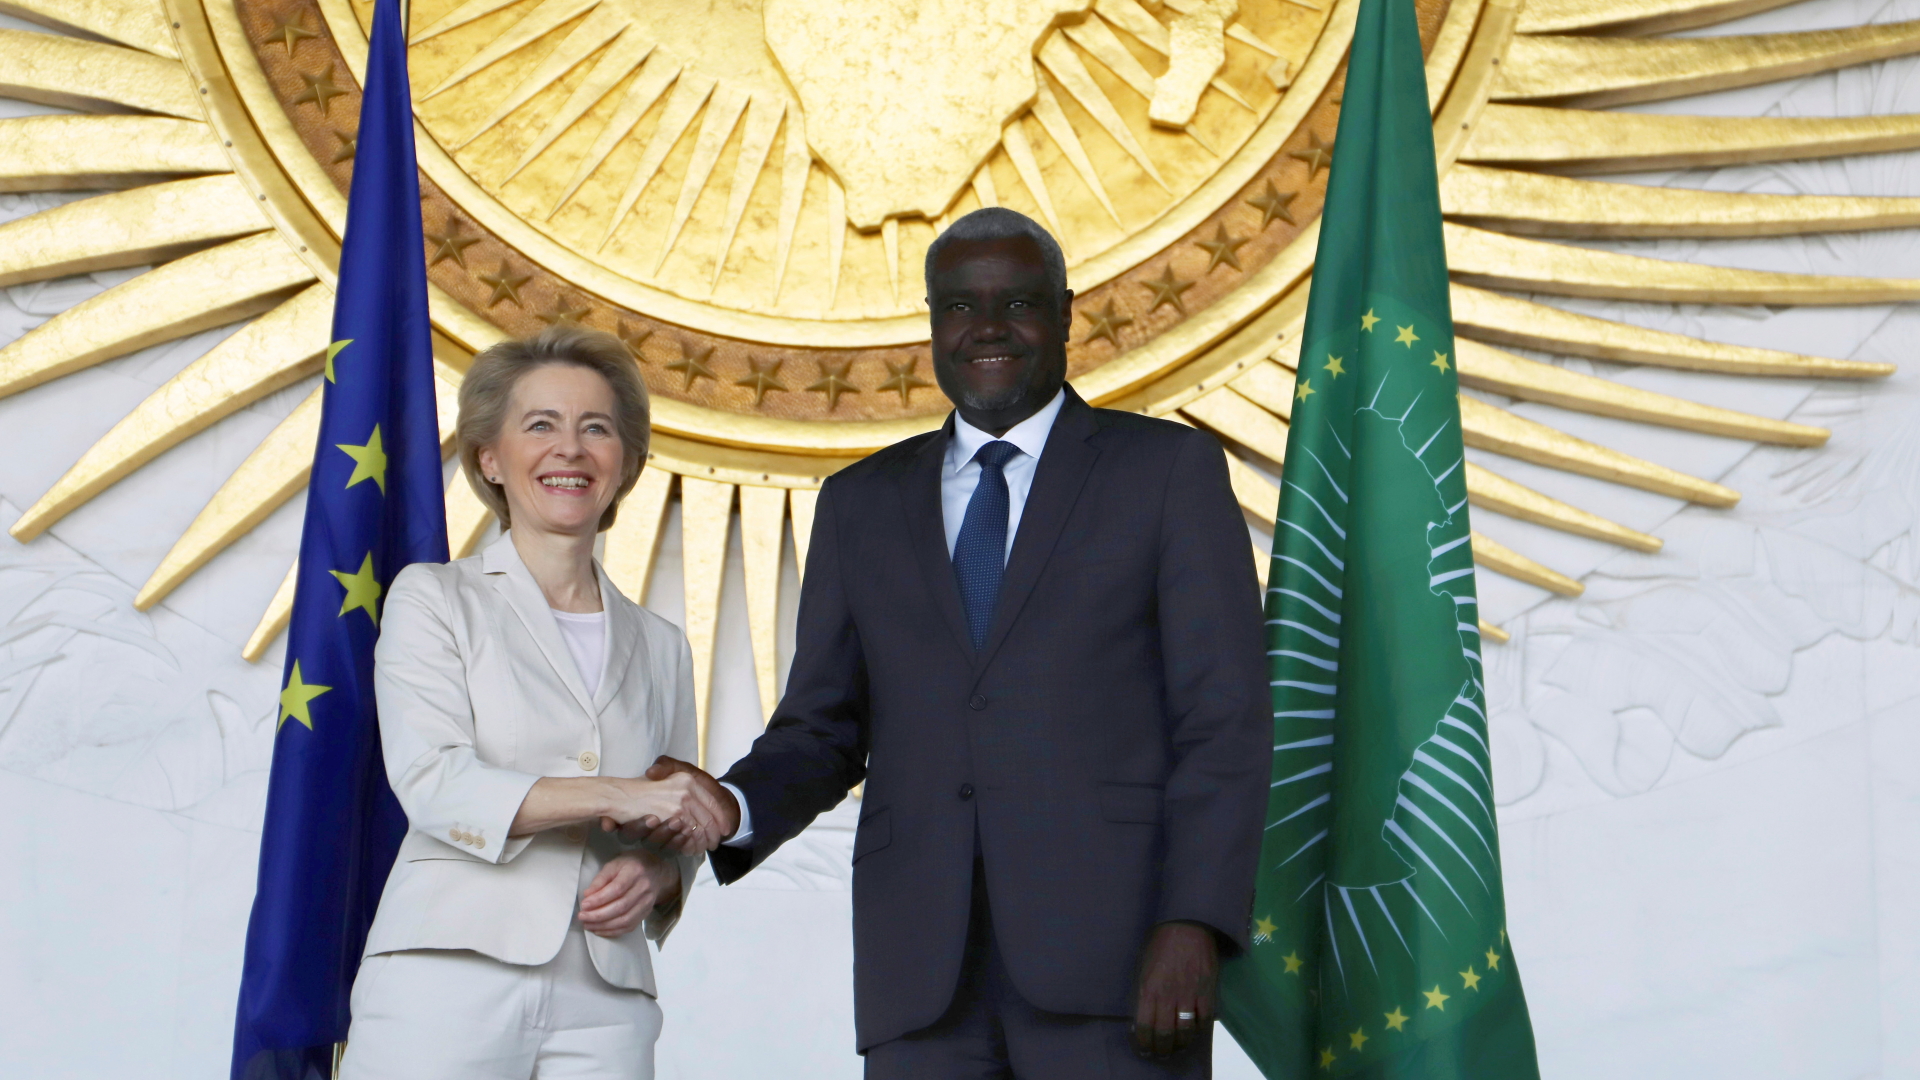 EU-Kommissionspräsidentin Ursula von der Leyen bei Handschlag mit dem Chef der Afrikanischen Union, Moussa Faki.